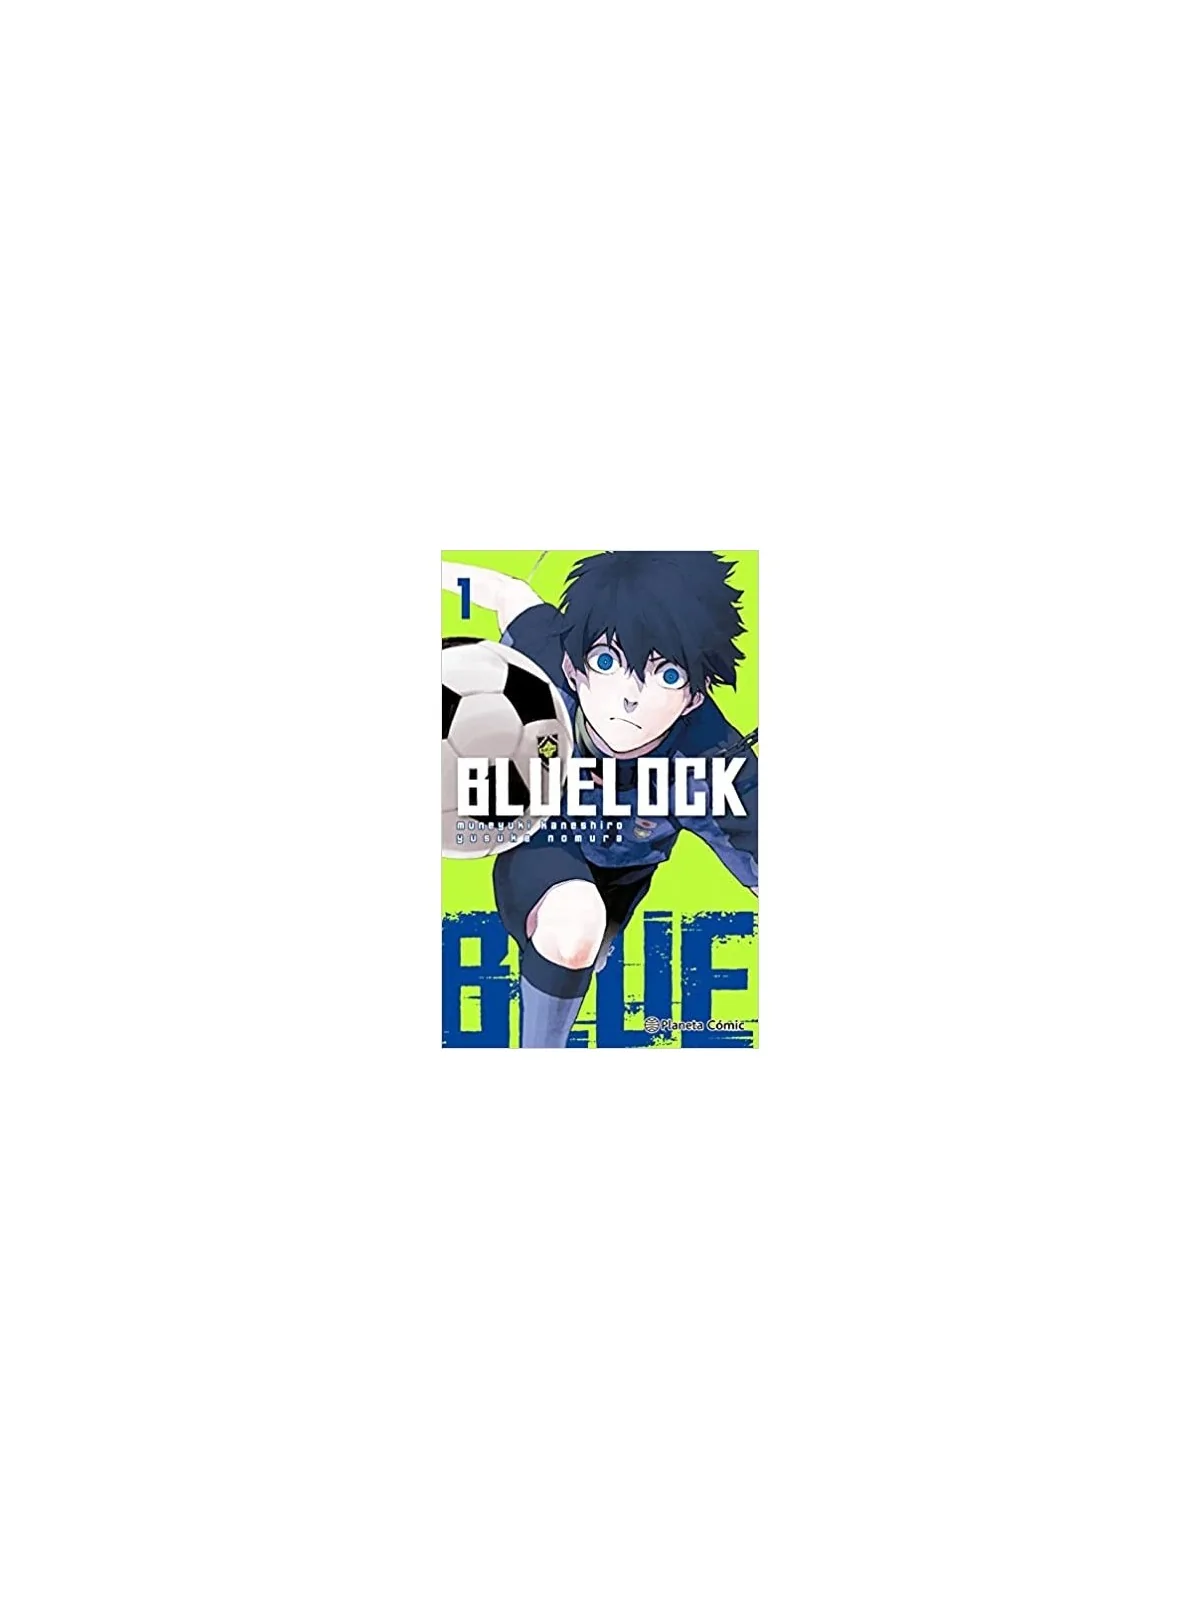 Comprar Blue Lock Nº 01 barato al mejor precio 8,07 € de Planeta Comic